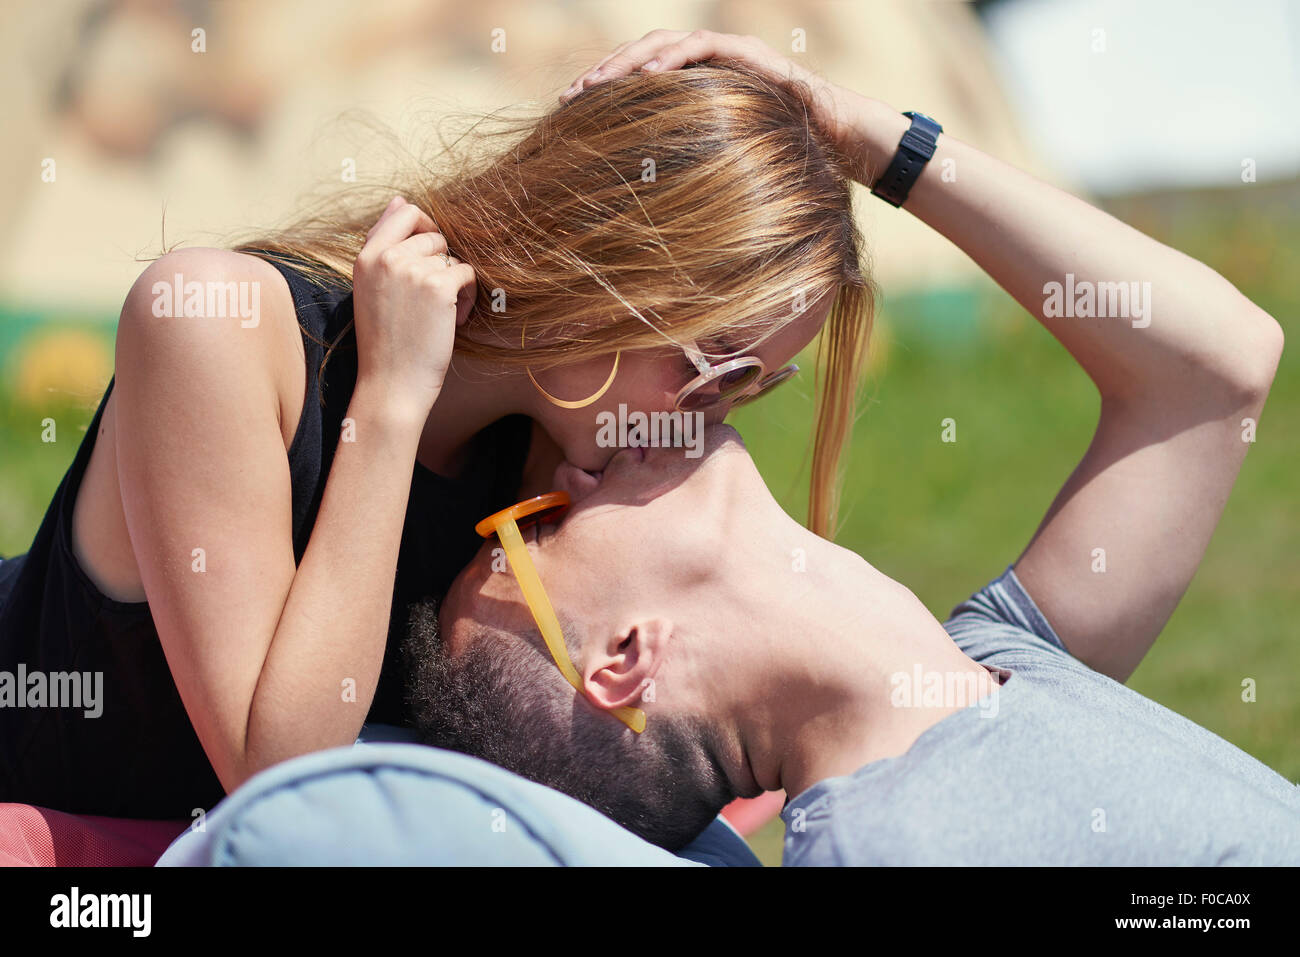 Mujeres besándose fotografías e imágenes de alta resolución - Página 6 -  Alamy